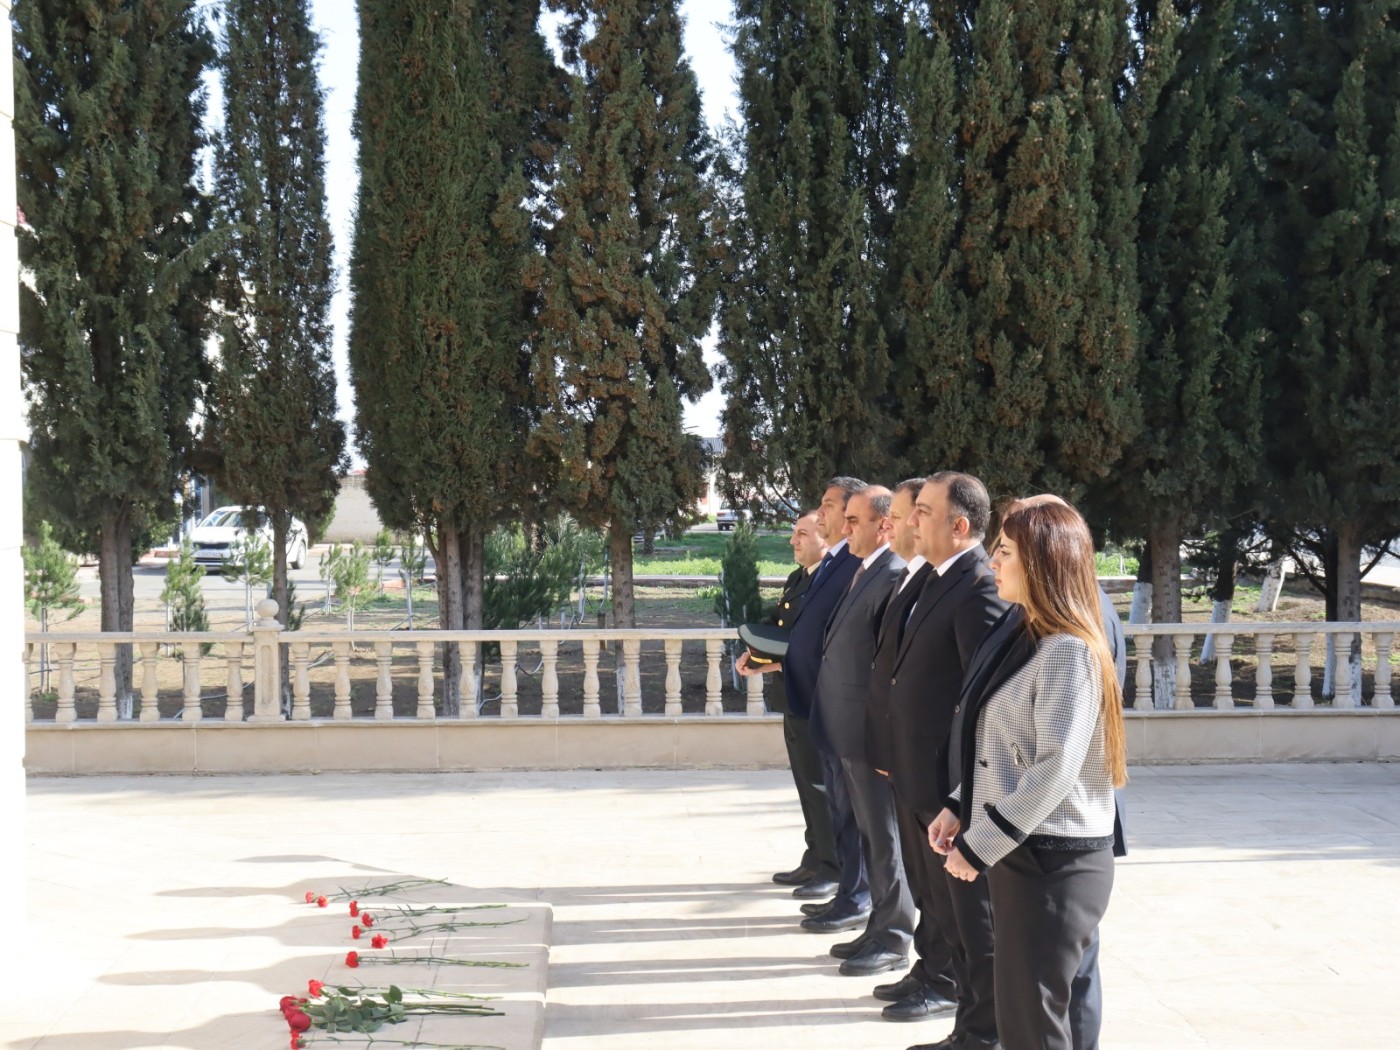 Samuxda 31 mart soyqırımı günü qeyd edildi - FOTOLAR